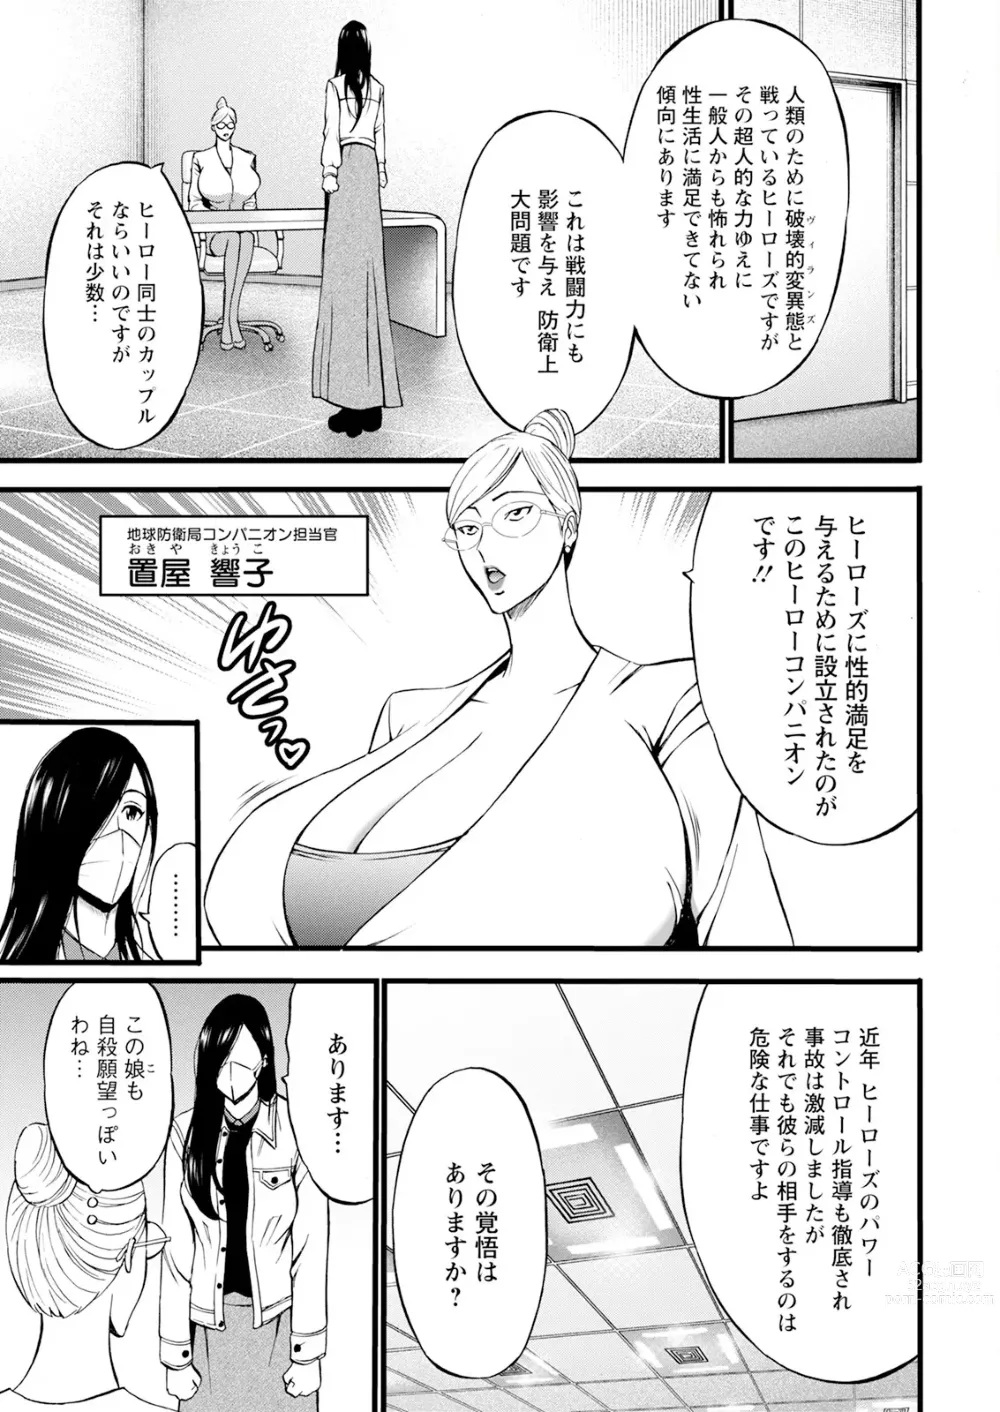 Page 13 of manga Action Pizazz 2023-12